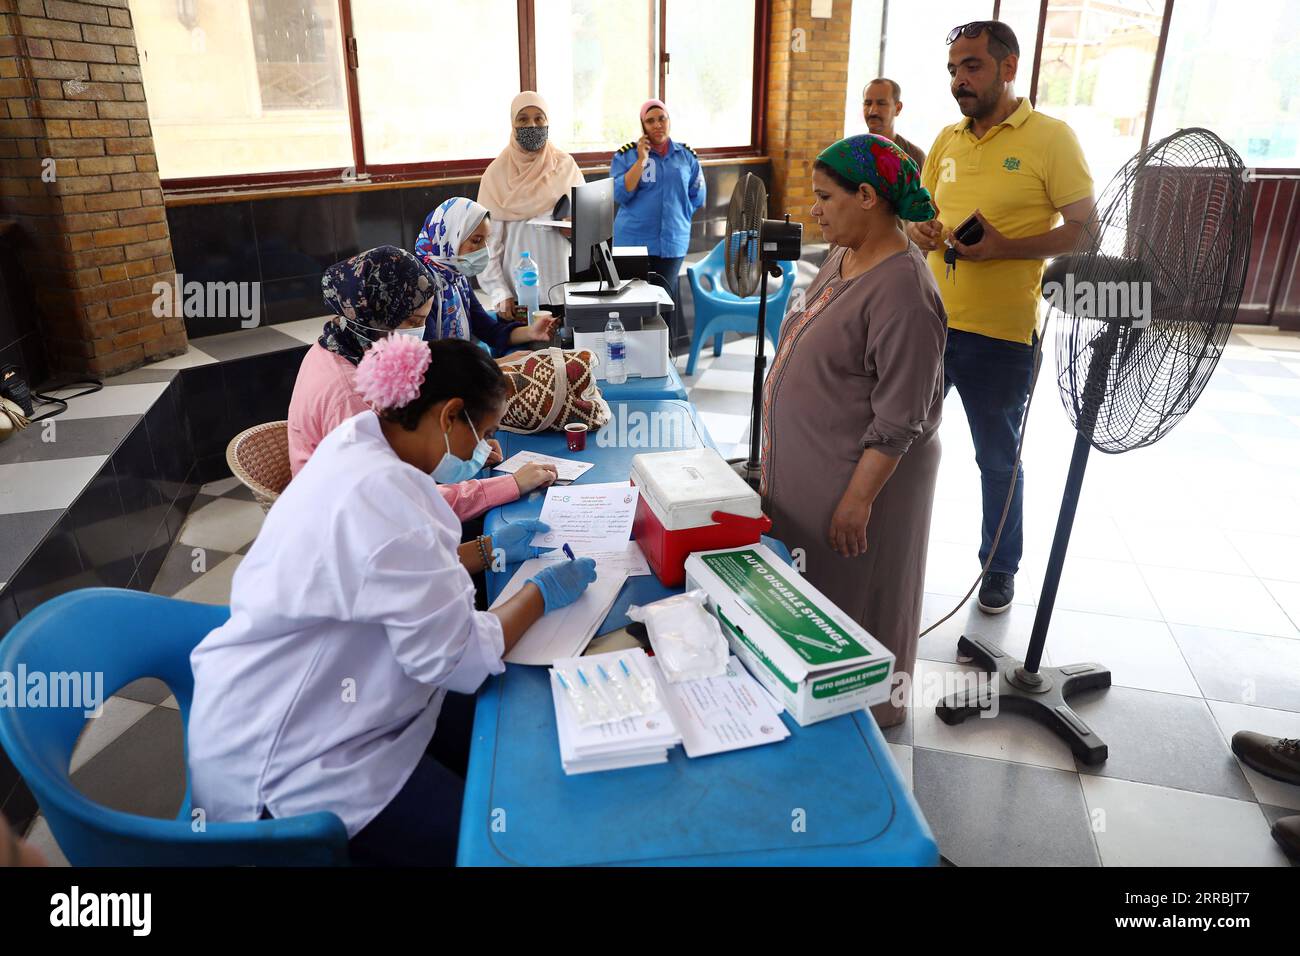 210926 -- KAIRO, 26. September 2021 -- medizinische Mitarbeiter registrieren sich für Menschen, die auf einen COVID-19-Impfstoff warten, im Rod El Farag Youth Center in Kairo, Ägypten, 26. September 2021. Ägypten eröffnete am Sonntag ein Jugendzentrum in jeder Provinz, um Menschen mit COVID-19-Impfstoff zu impfen, um seine Impfkampagne voranzutreiben. ÄGYPTEN-KAIRO-JUGENDZENTRUM-IMPFUNG AhmedxGomaa PUBLICATIONxNOTxINxCHN Stockfoto